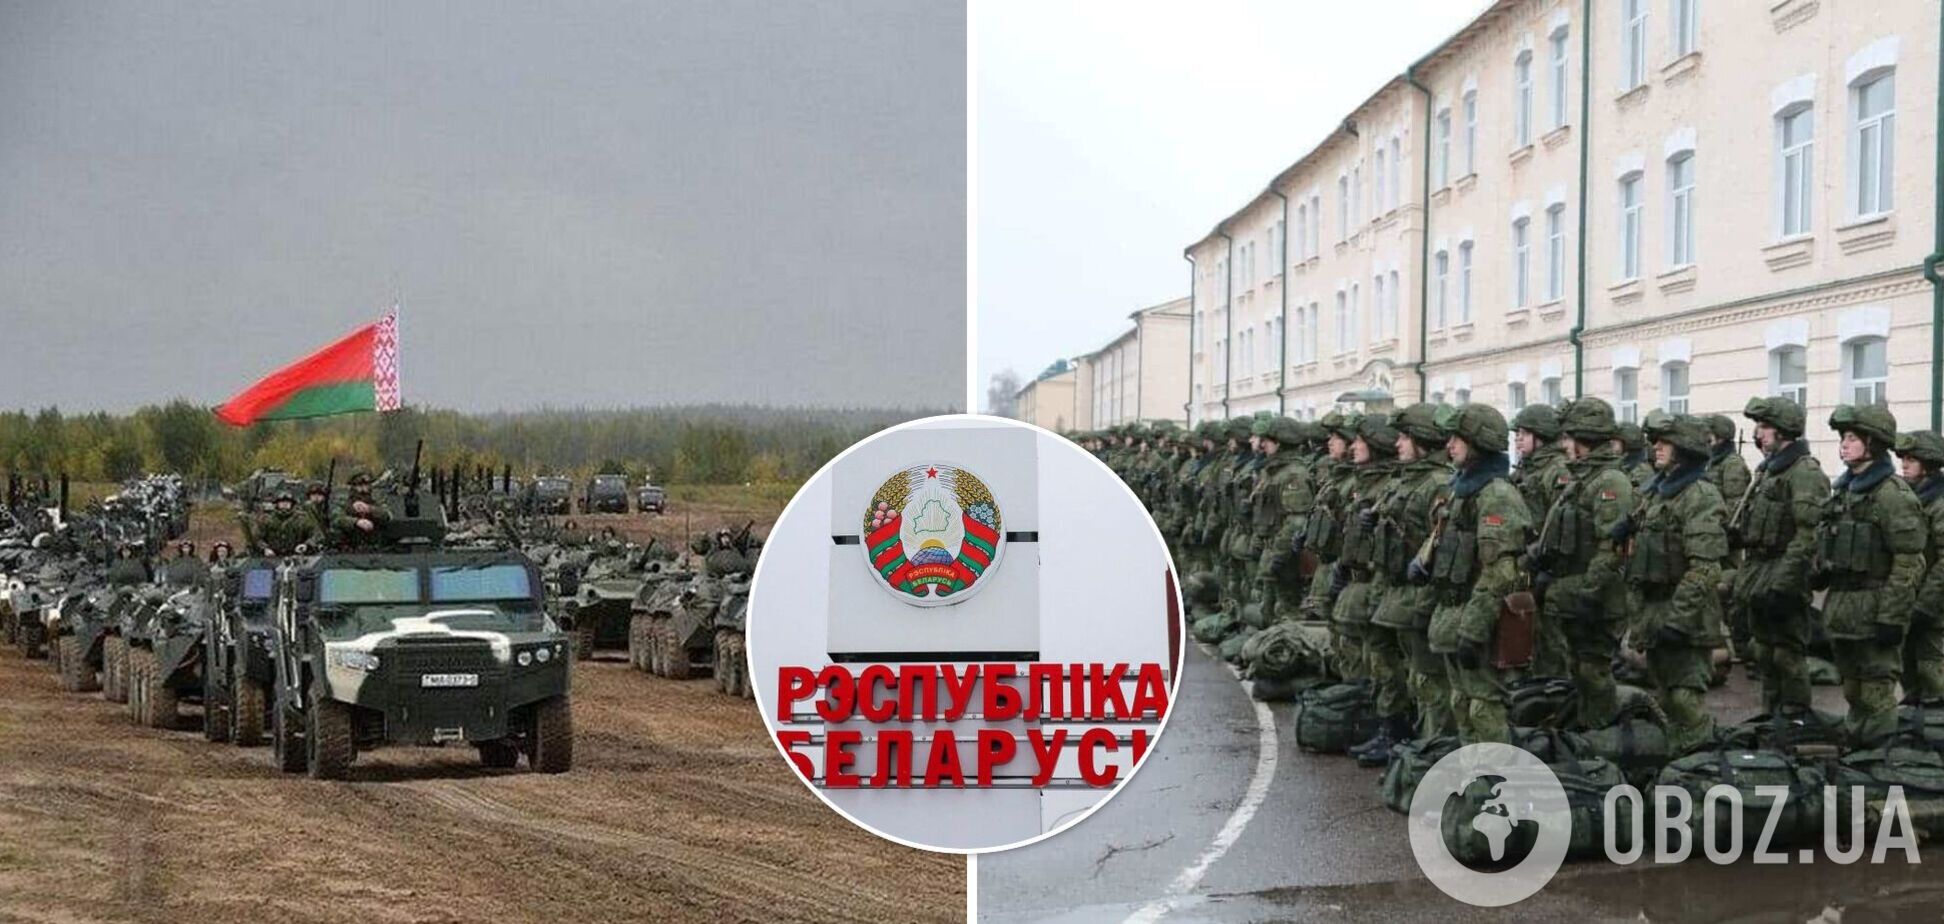 Лукашенко посылает в Украину войска, белорусов просят блокировать дороги, – разведка